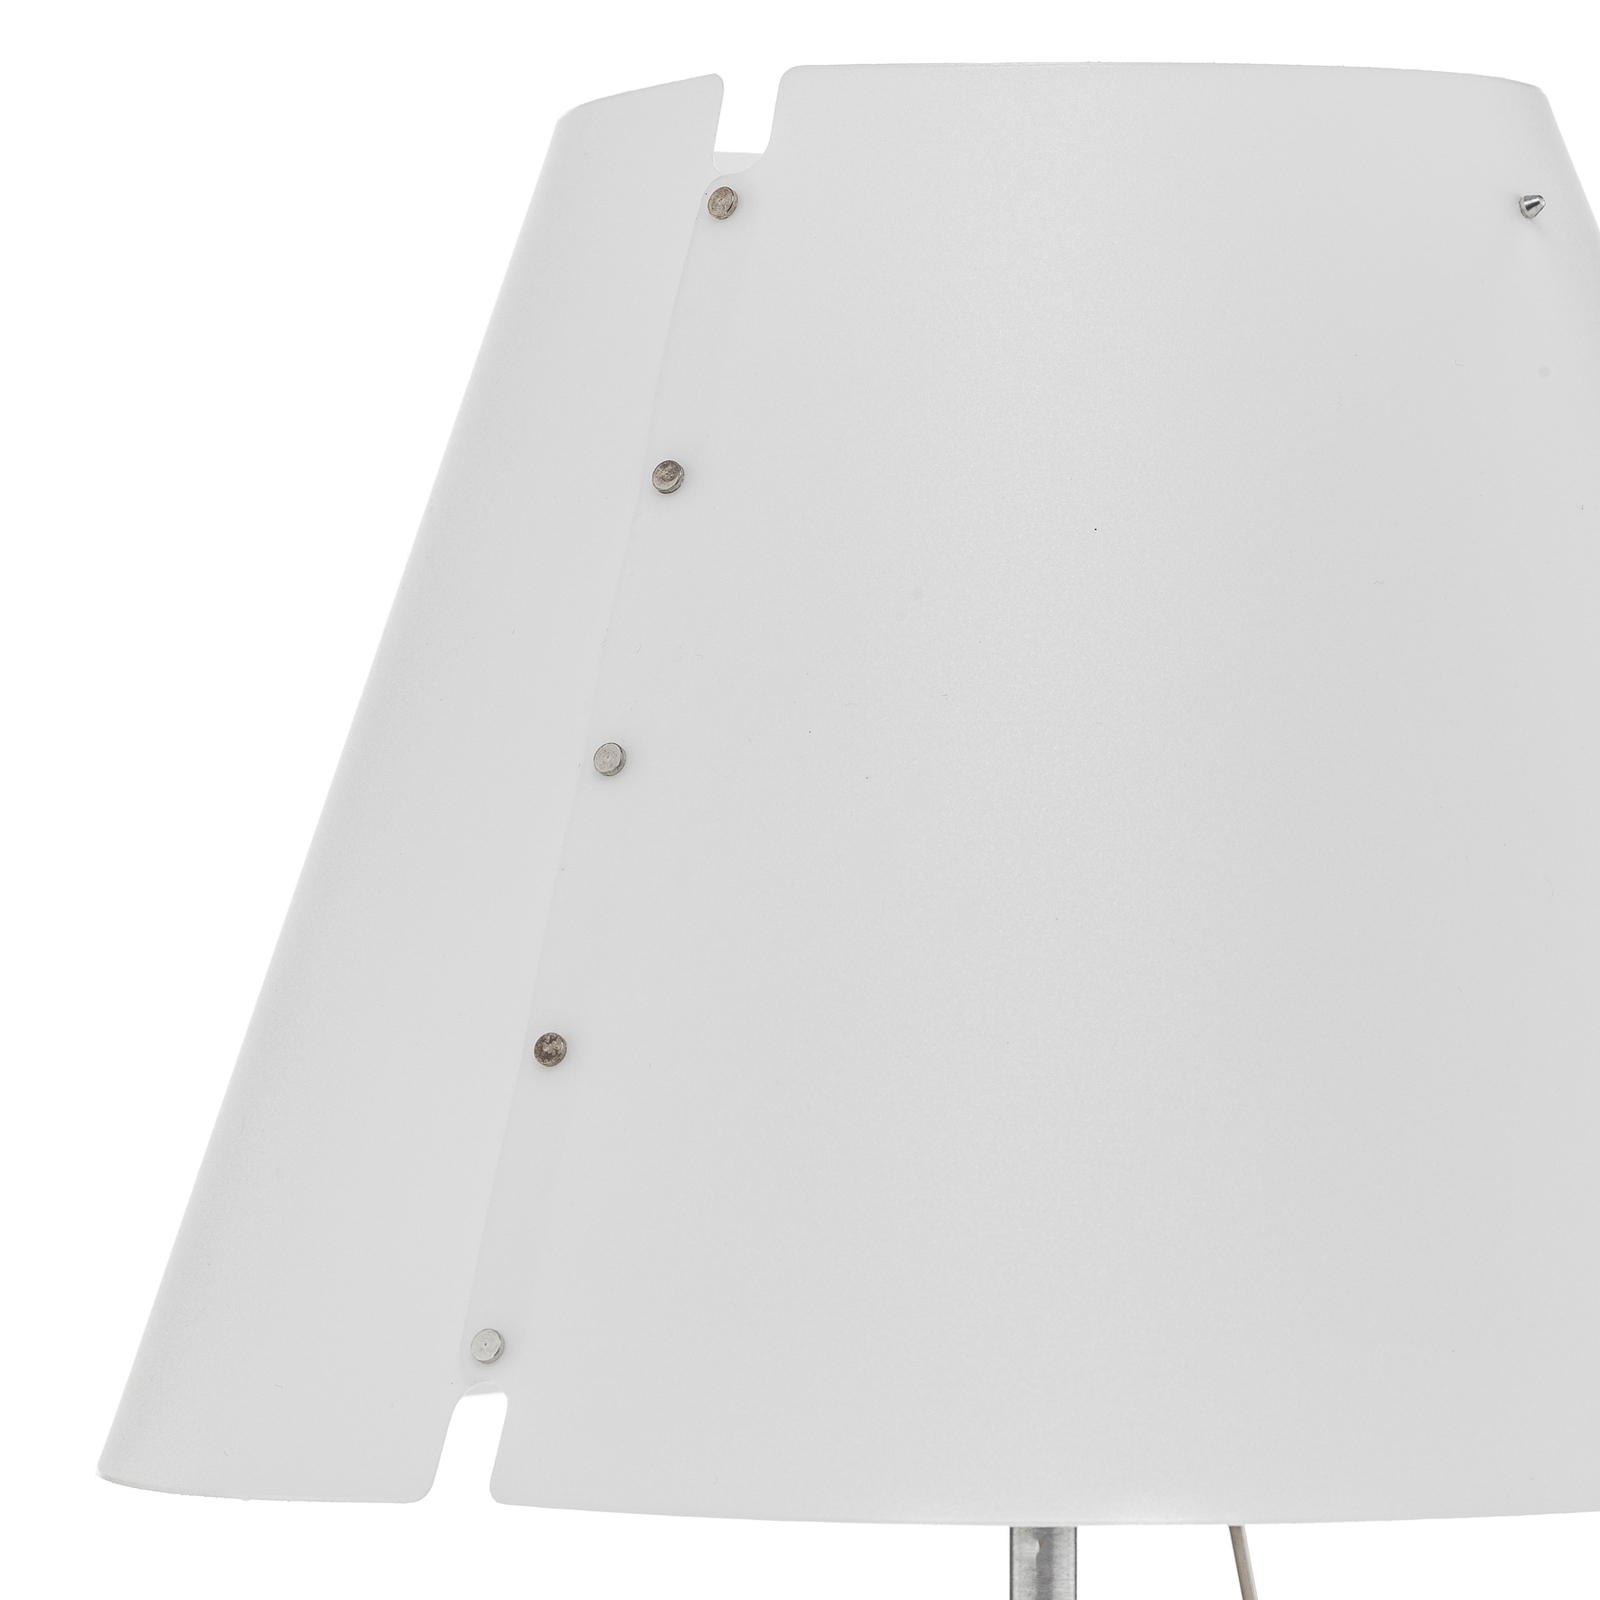 Luceplan Costanzina LED lámpa alu fehér